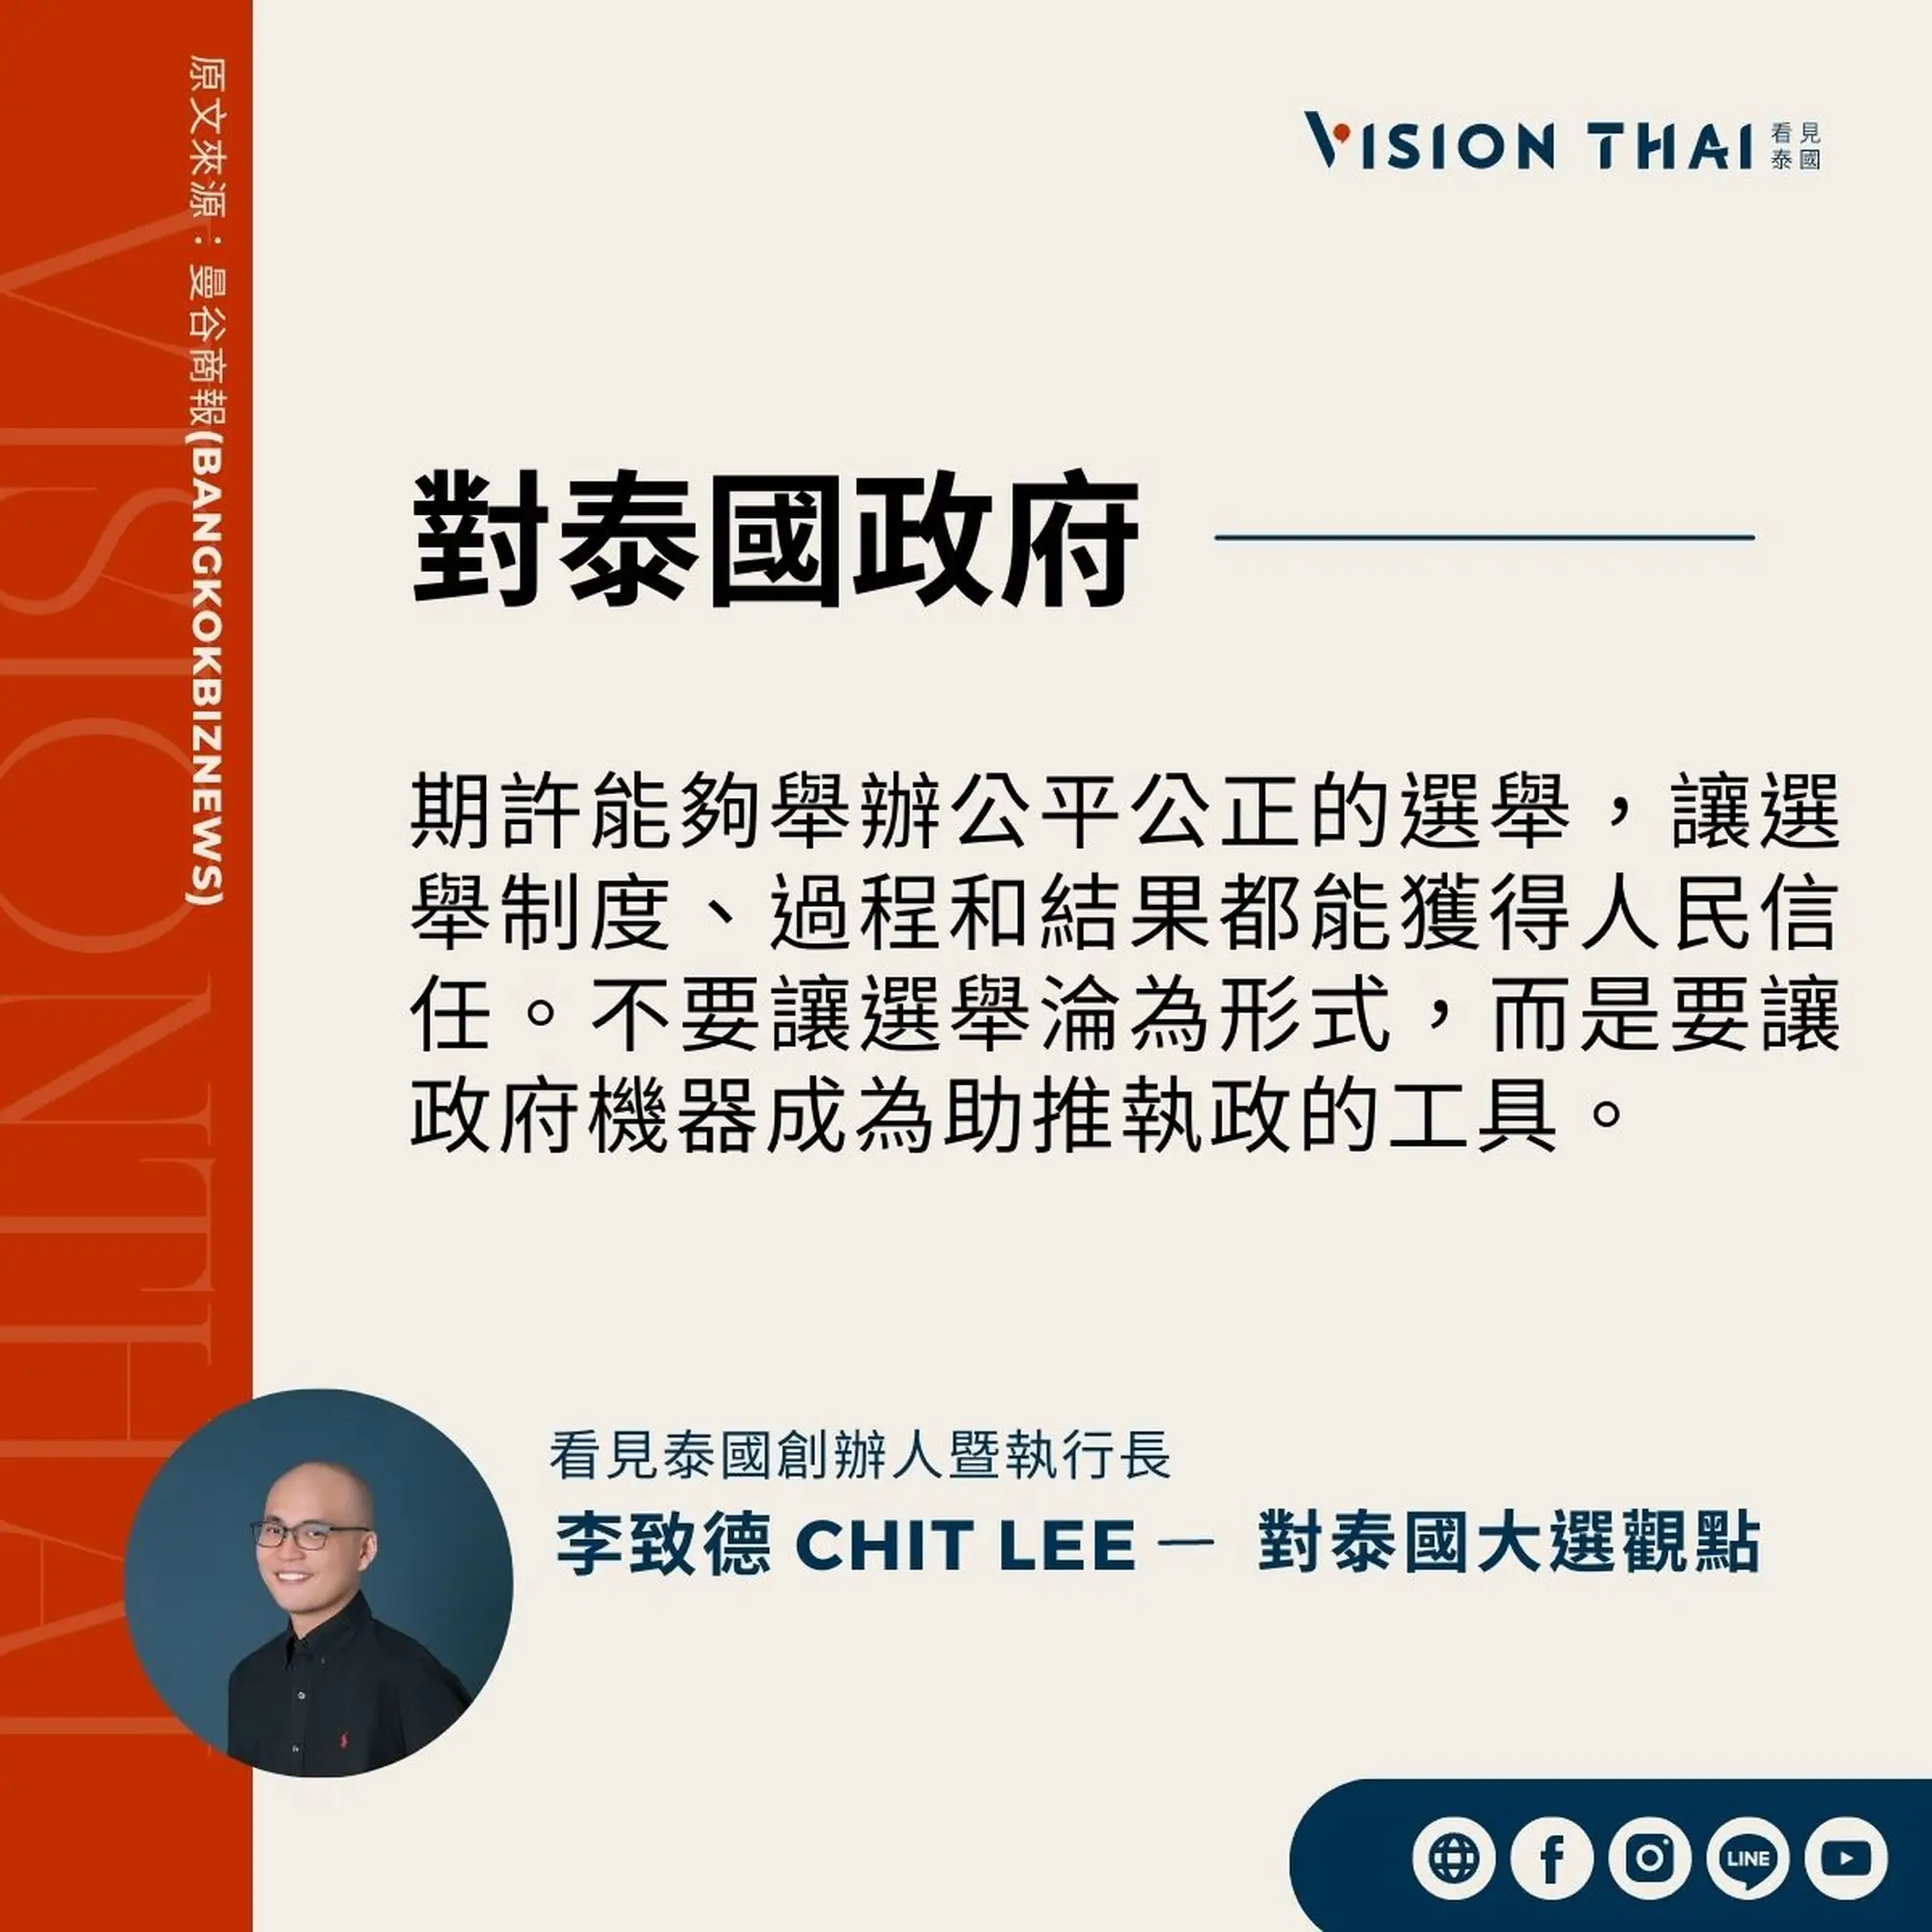 《曼谷商報》採訪Vision Thai 看見泰國媒體創辦人暨執行長李致德(Chit Lee)對泰國新政府的期許（來源：看見泰國製圖）